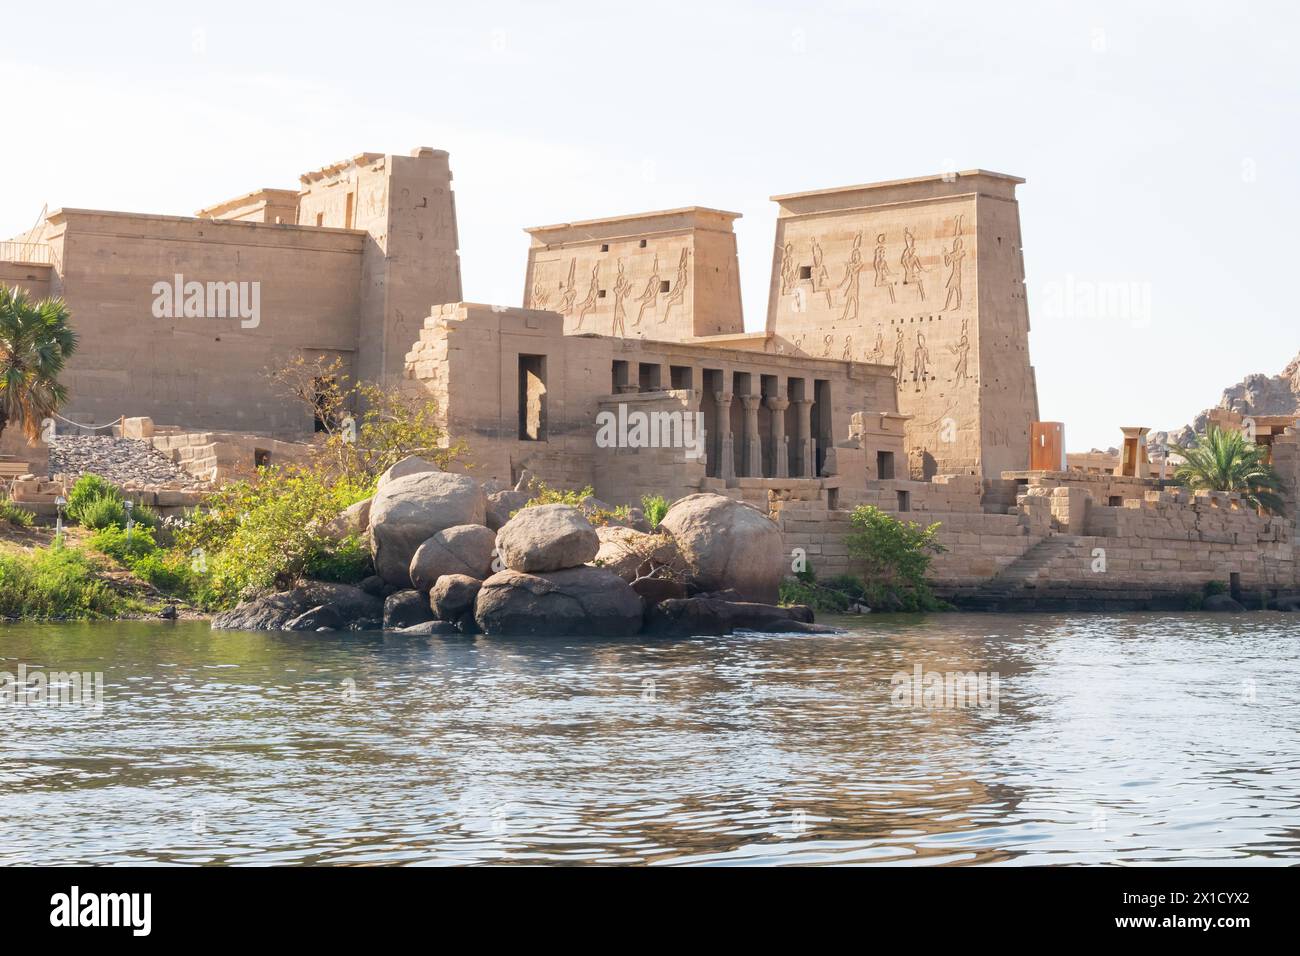 Complexe du temple de Philae, île d'Agilkia, réservoir du barrage d'Assouan. Lieu de sépulture d'Osiris. Égypte. De l'eau Banque D'Images